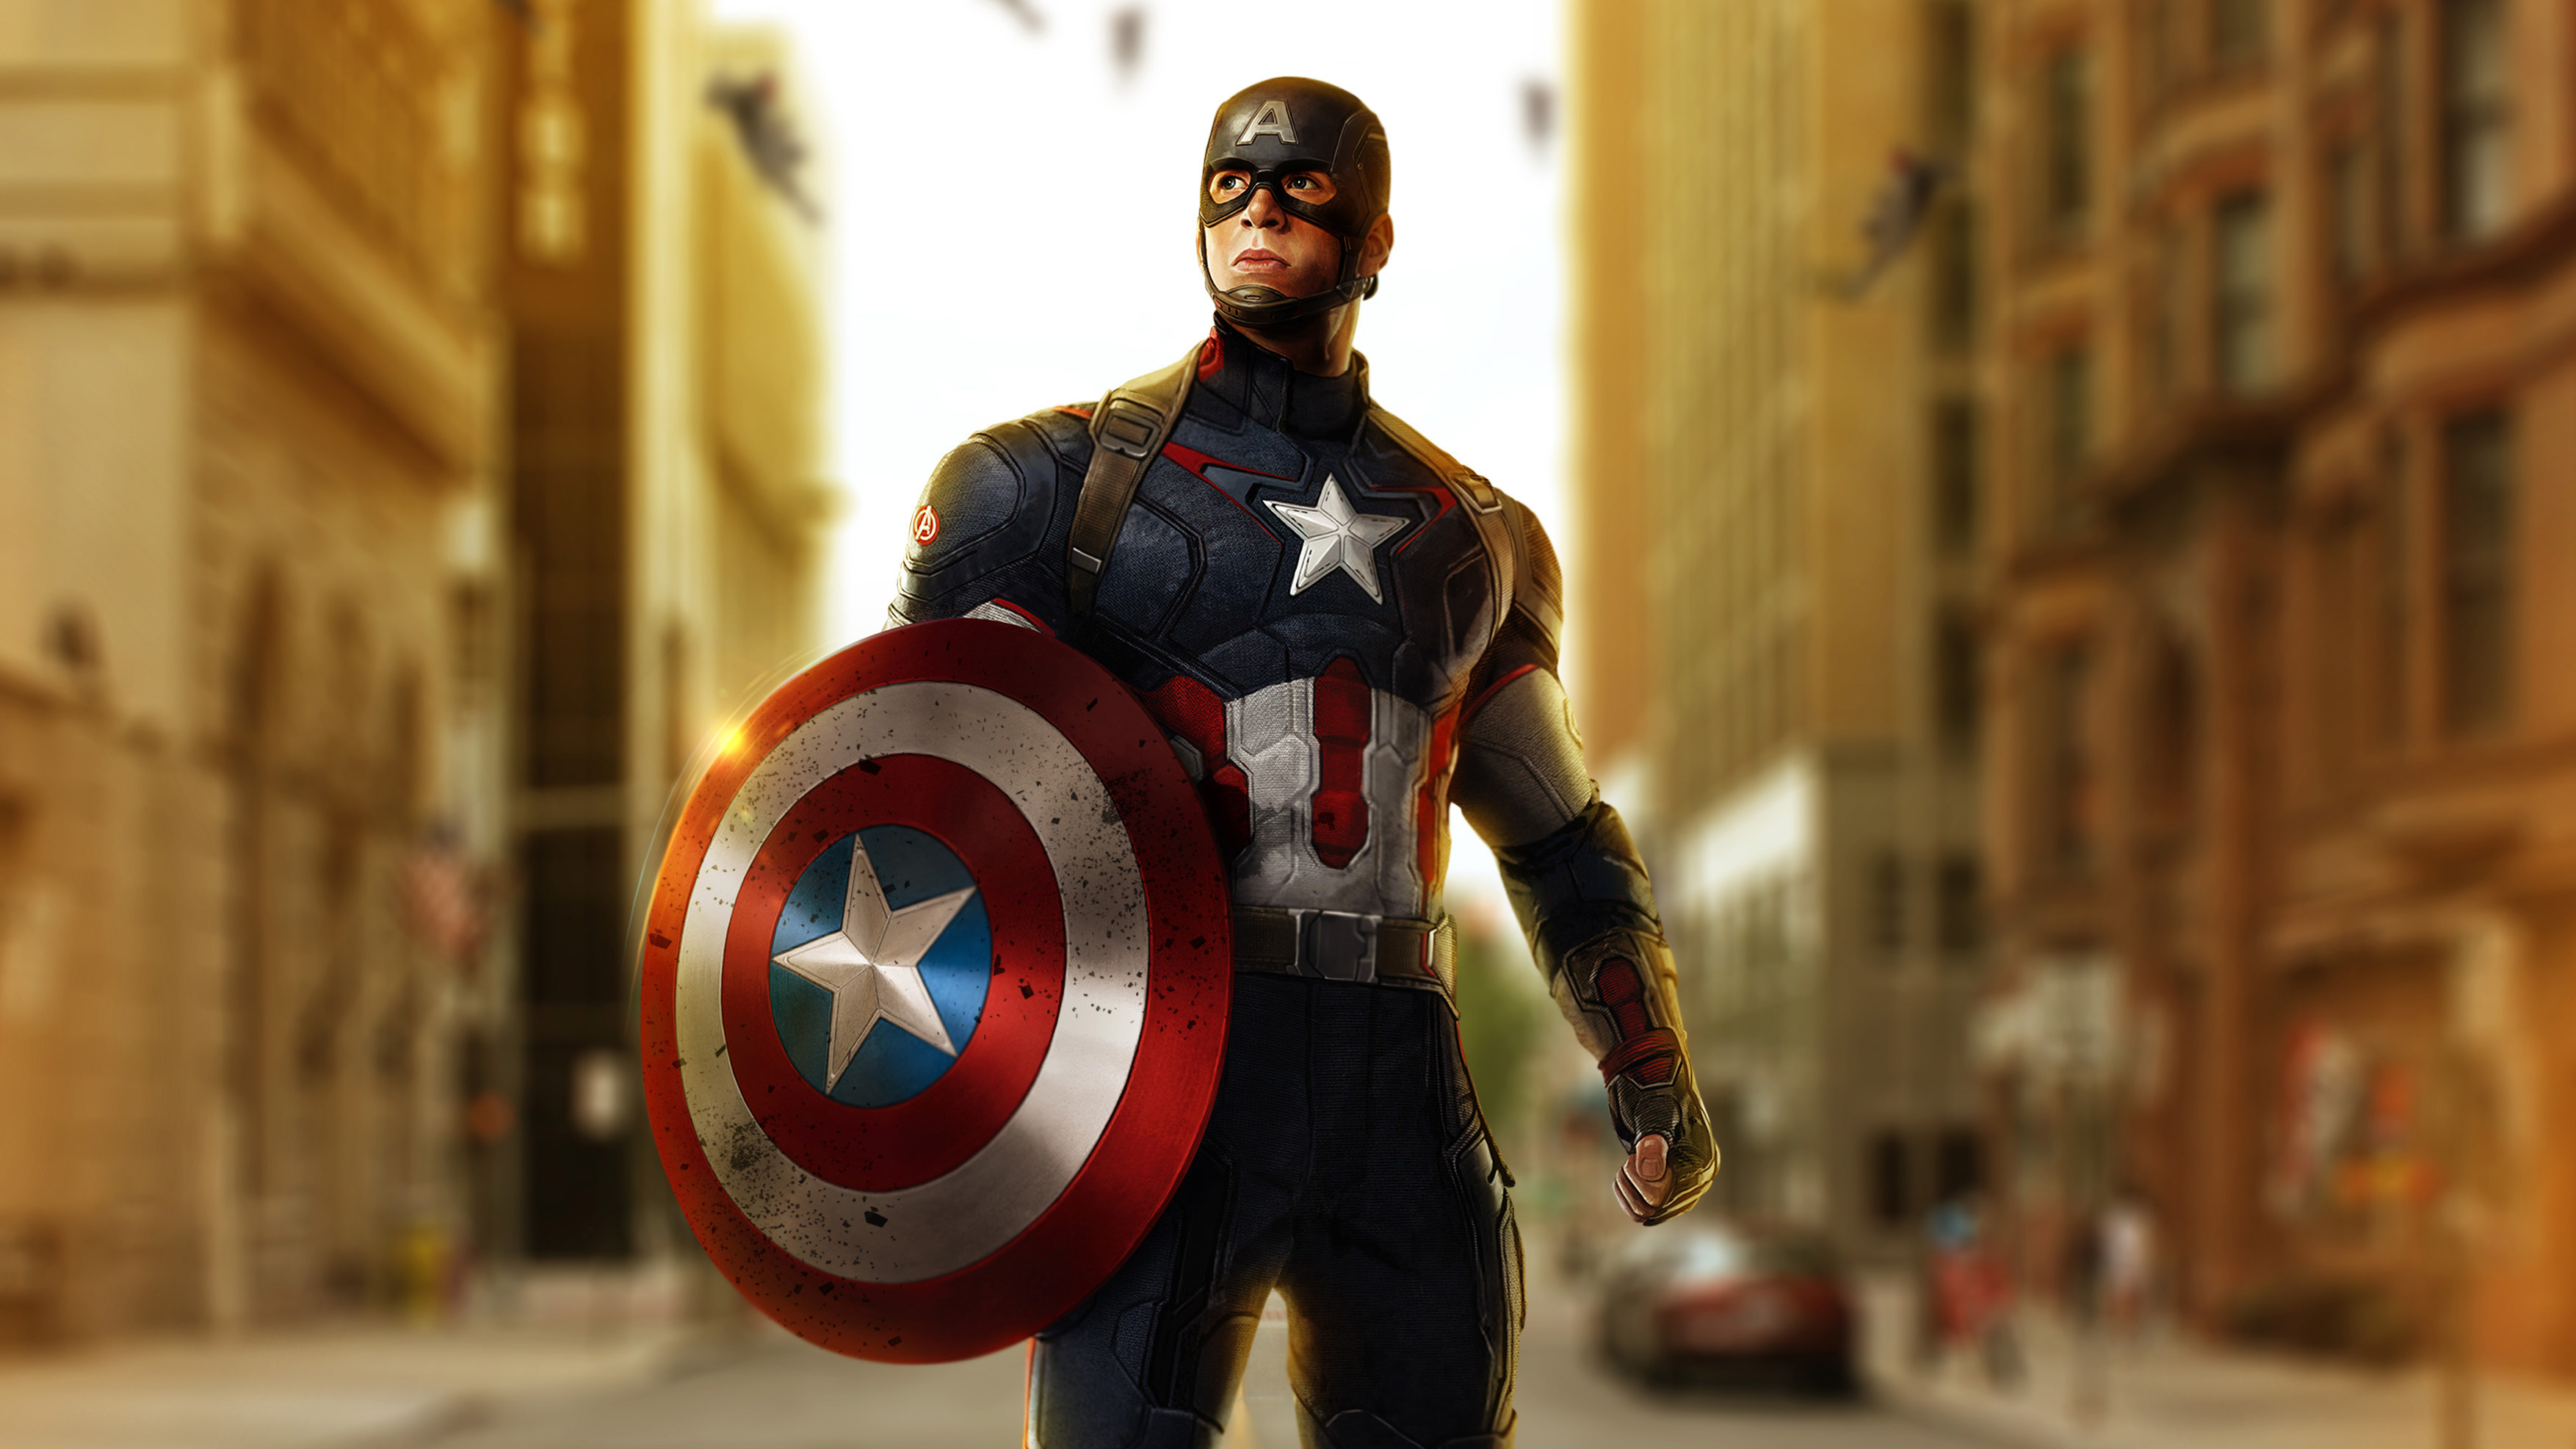 Скачать обои бесплатно Кино, Капитан Америка, Мстители, Мстители: Эра Альтрона картинка на рабочий стол ПК